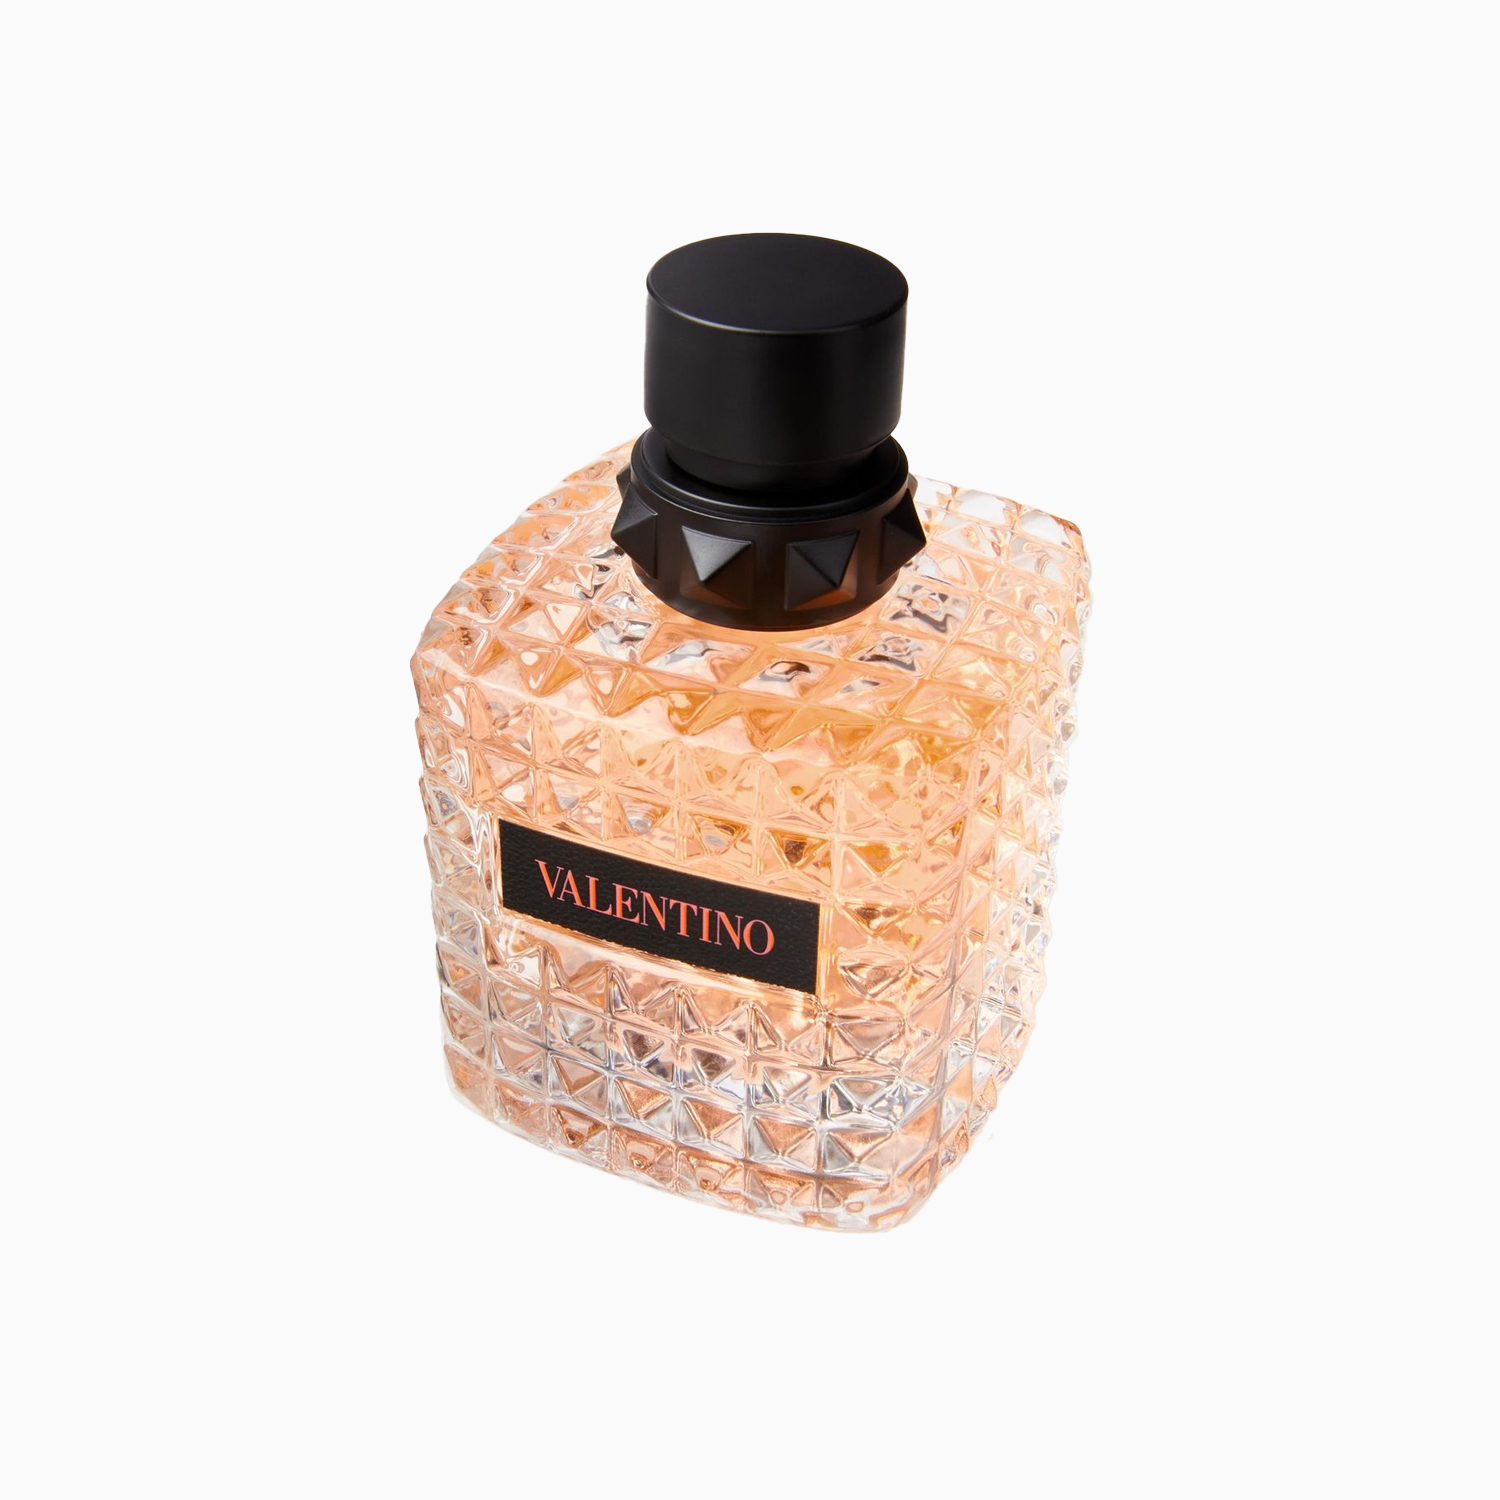 valentino-donna-born-in-roma-coral-fantasy-eau-de-perfume-spray-3-4-oz-3614273672054